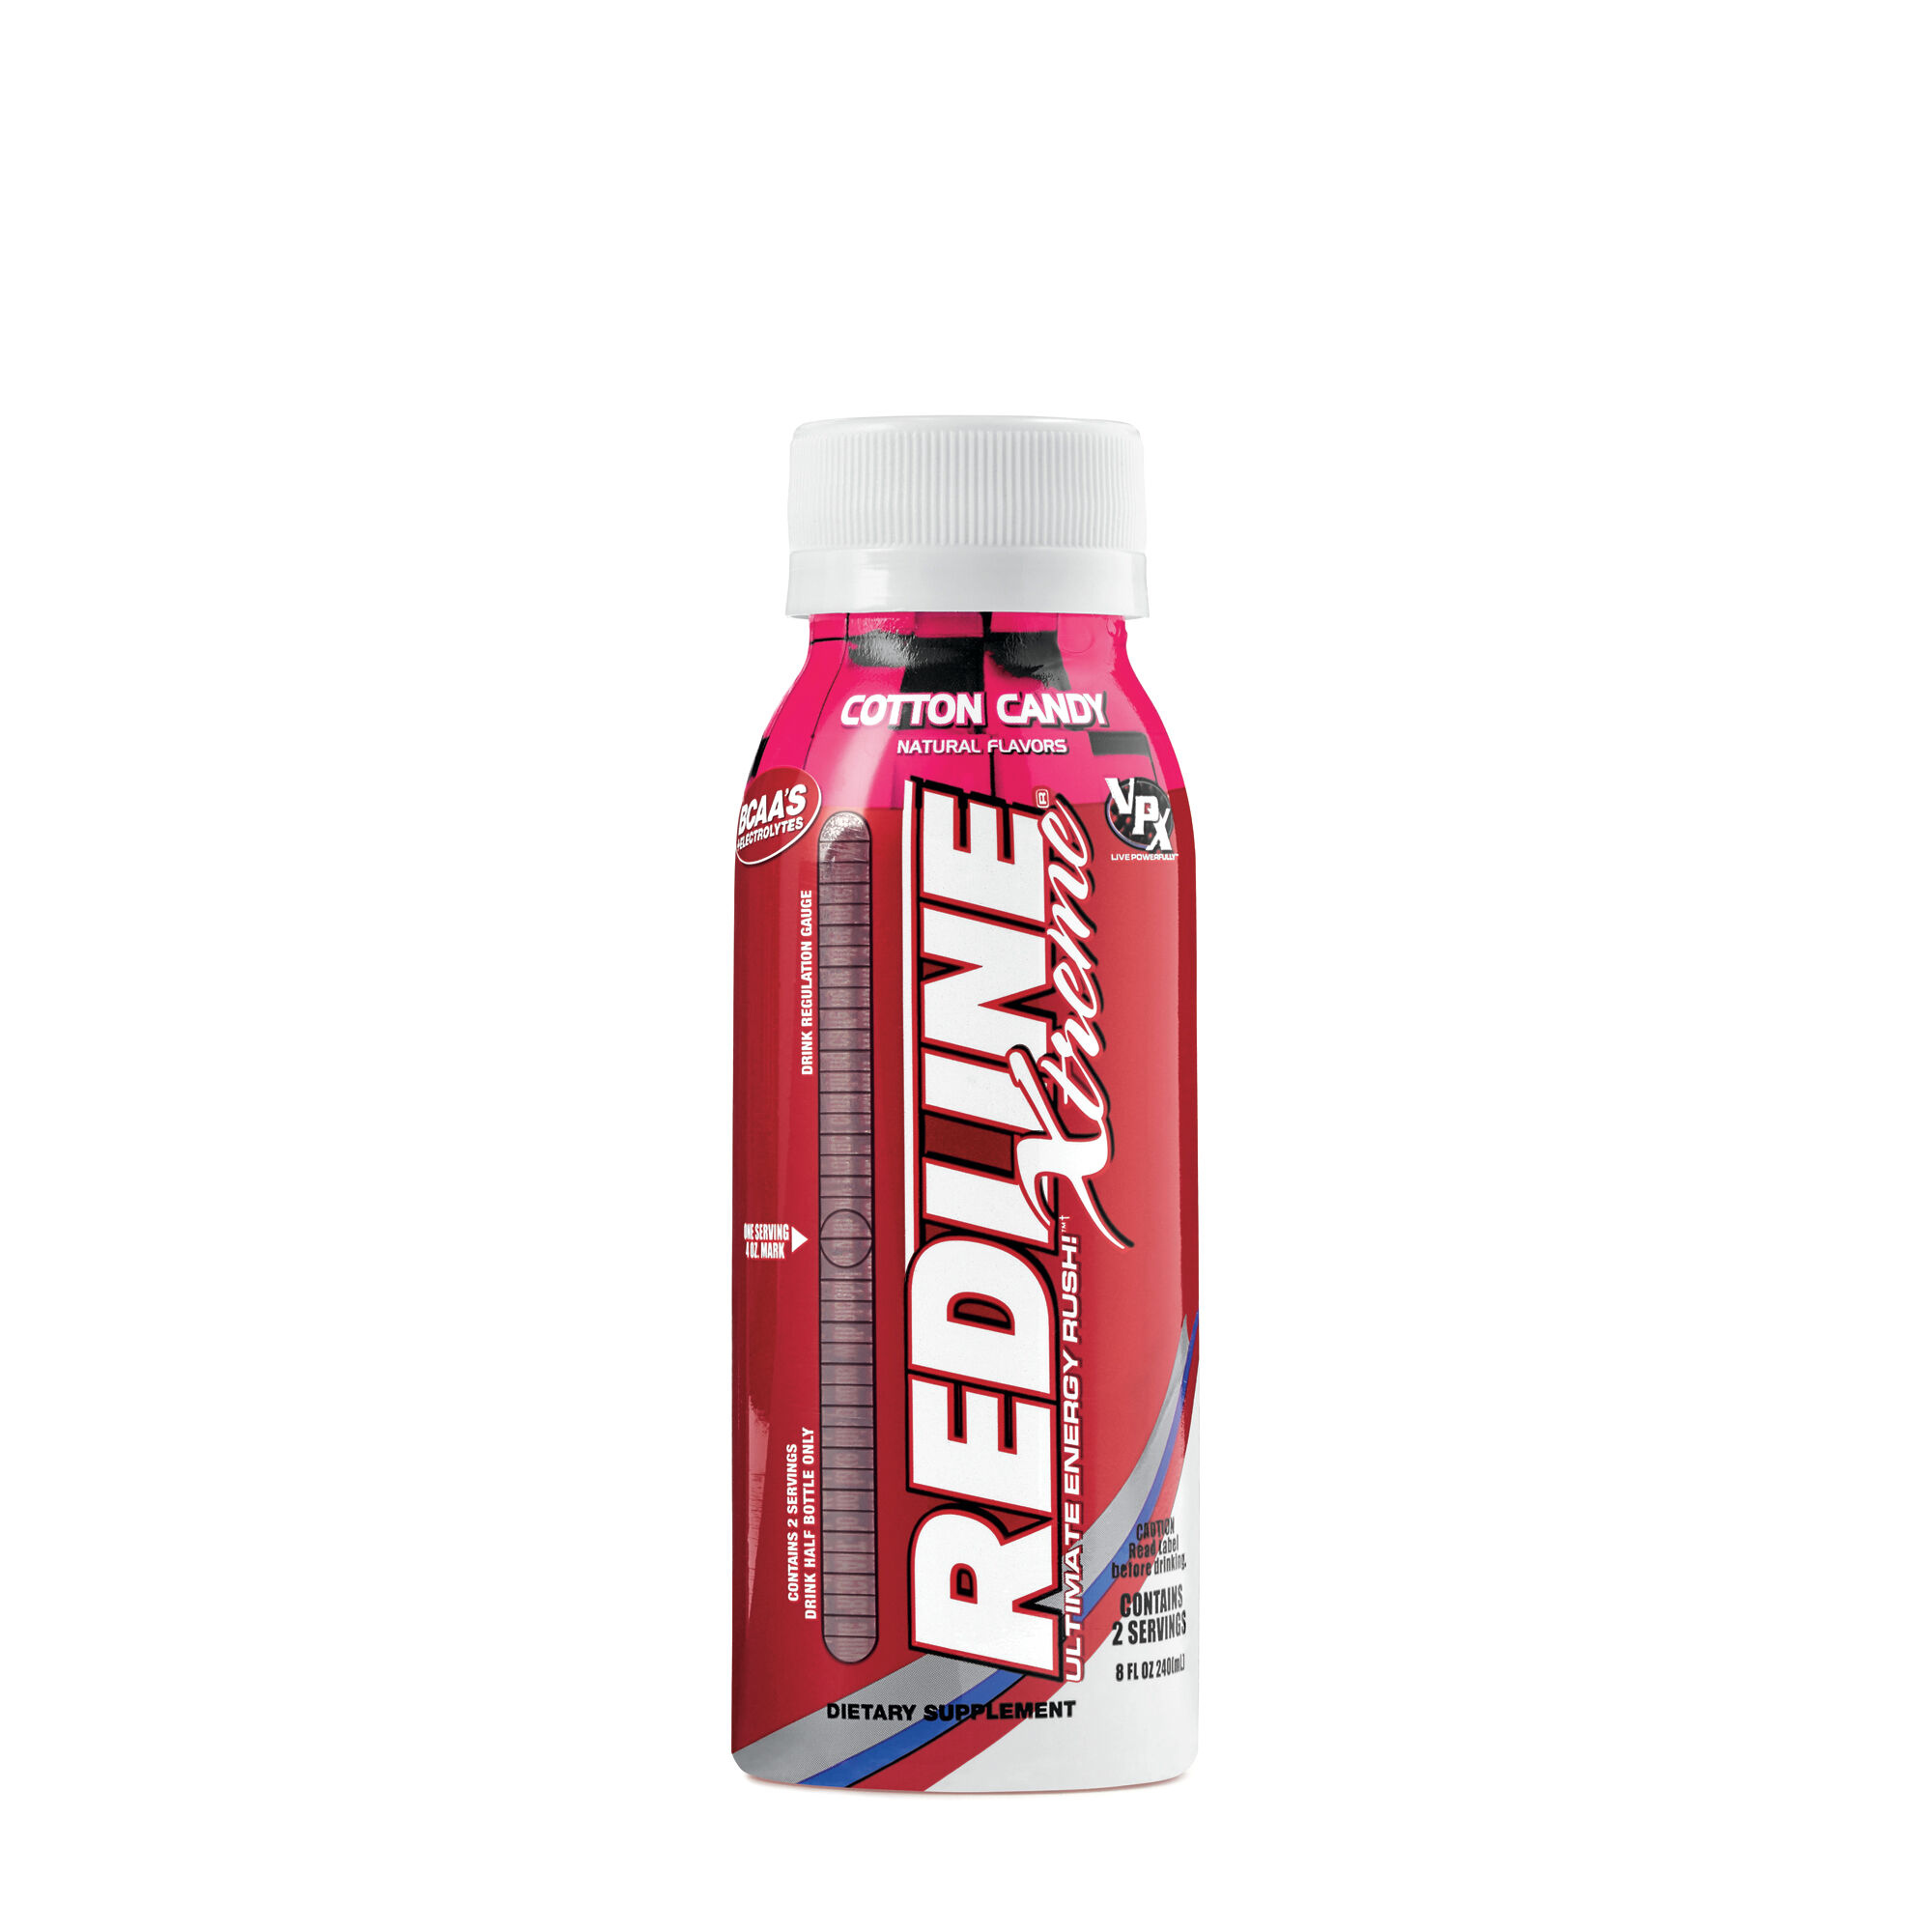 official website for redline energy drink